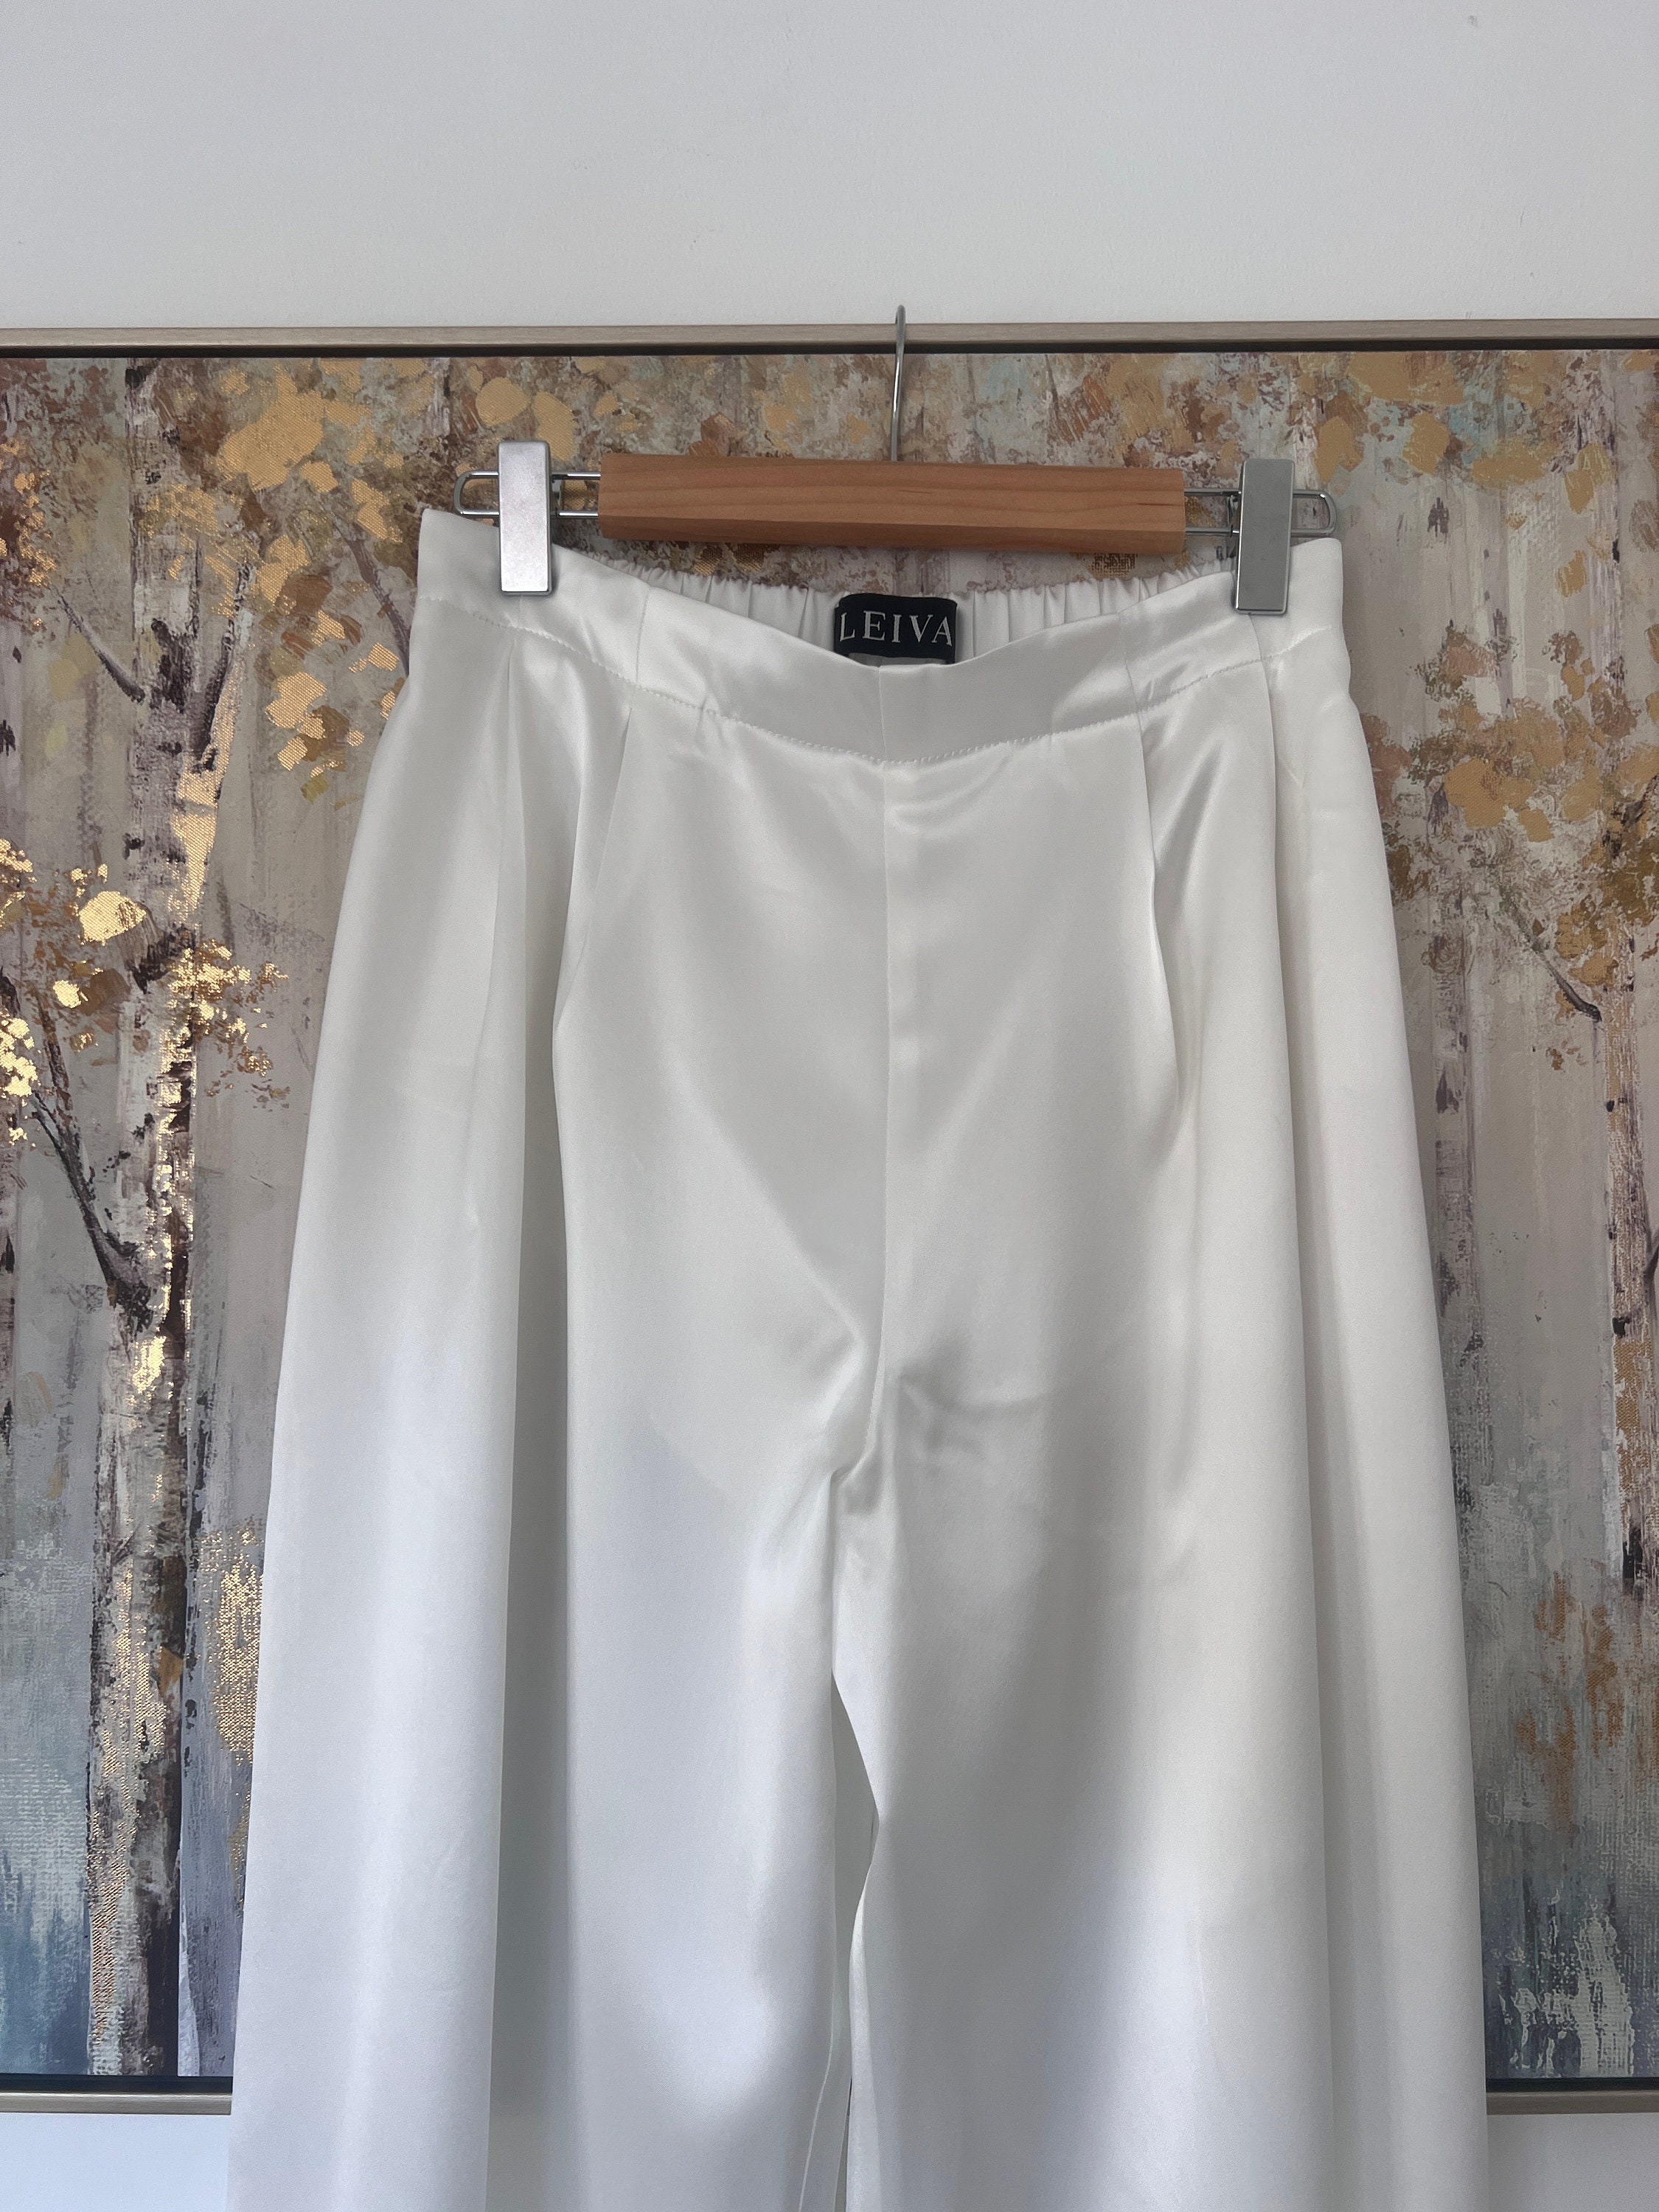 Louis Vuitton Supreme Collaboration Jacquard Silk Pajama Pants Size 42 White Rayon67% Silk33%